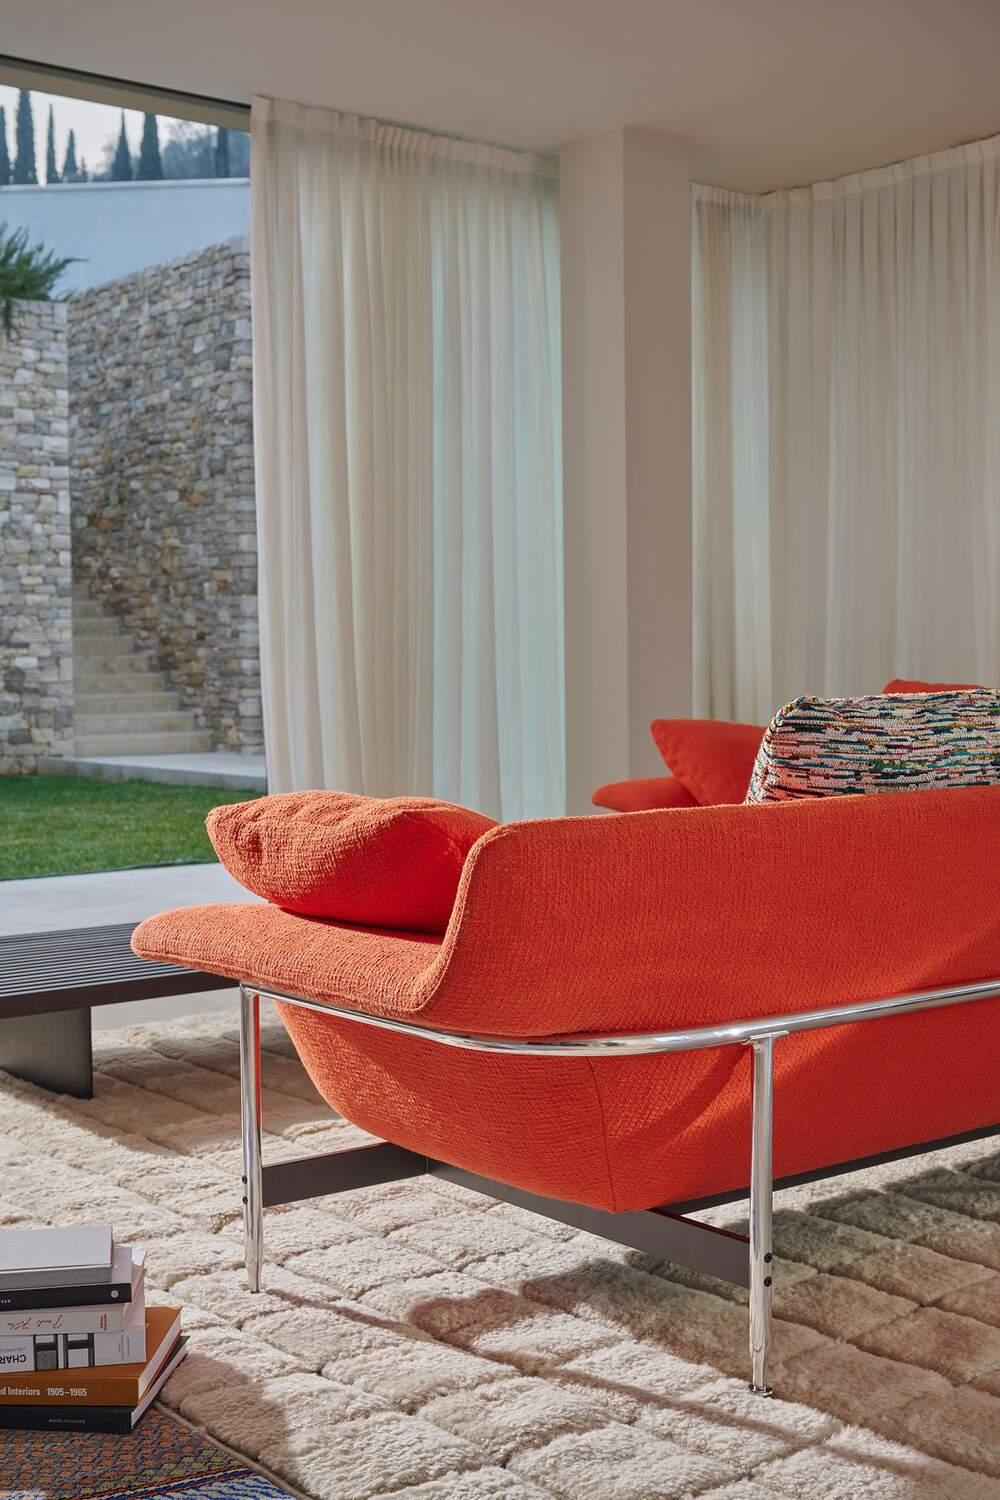 Contemporary Antonio Citterio Esosoft Sofa by Cassina For Sale